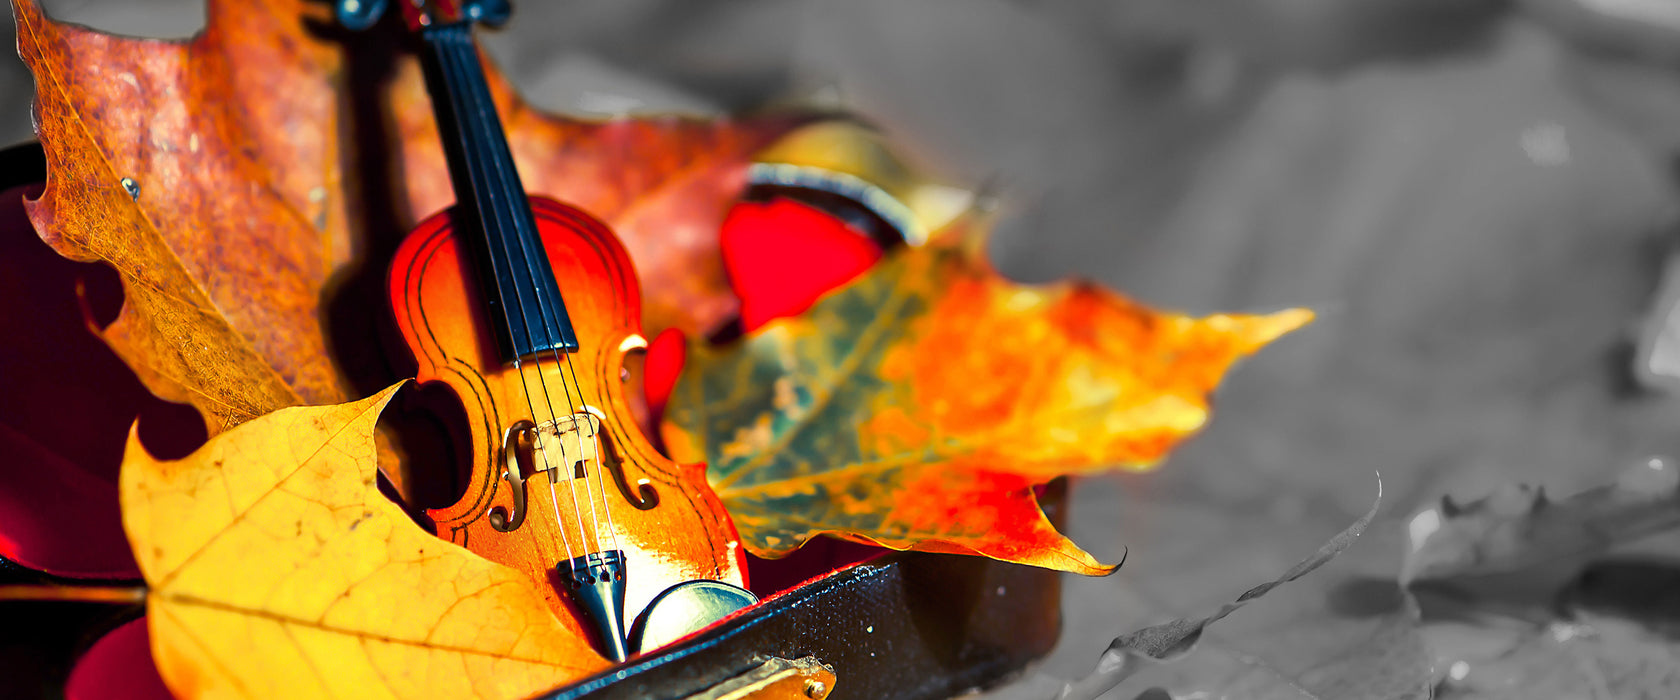 Violine umgeben von Blättern, Glasbild Panorama